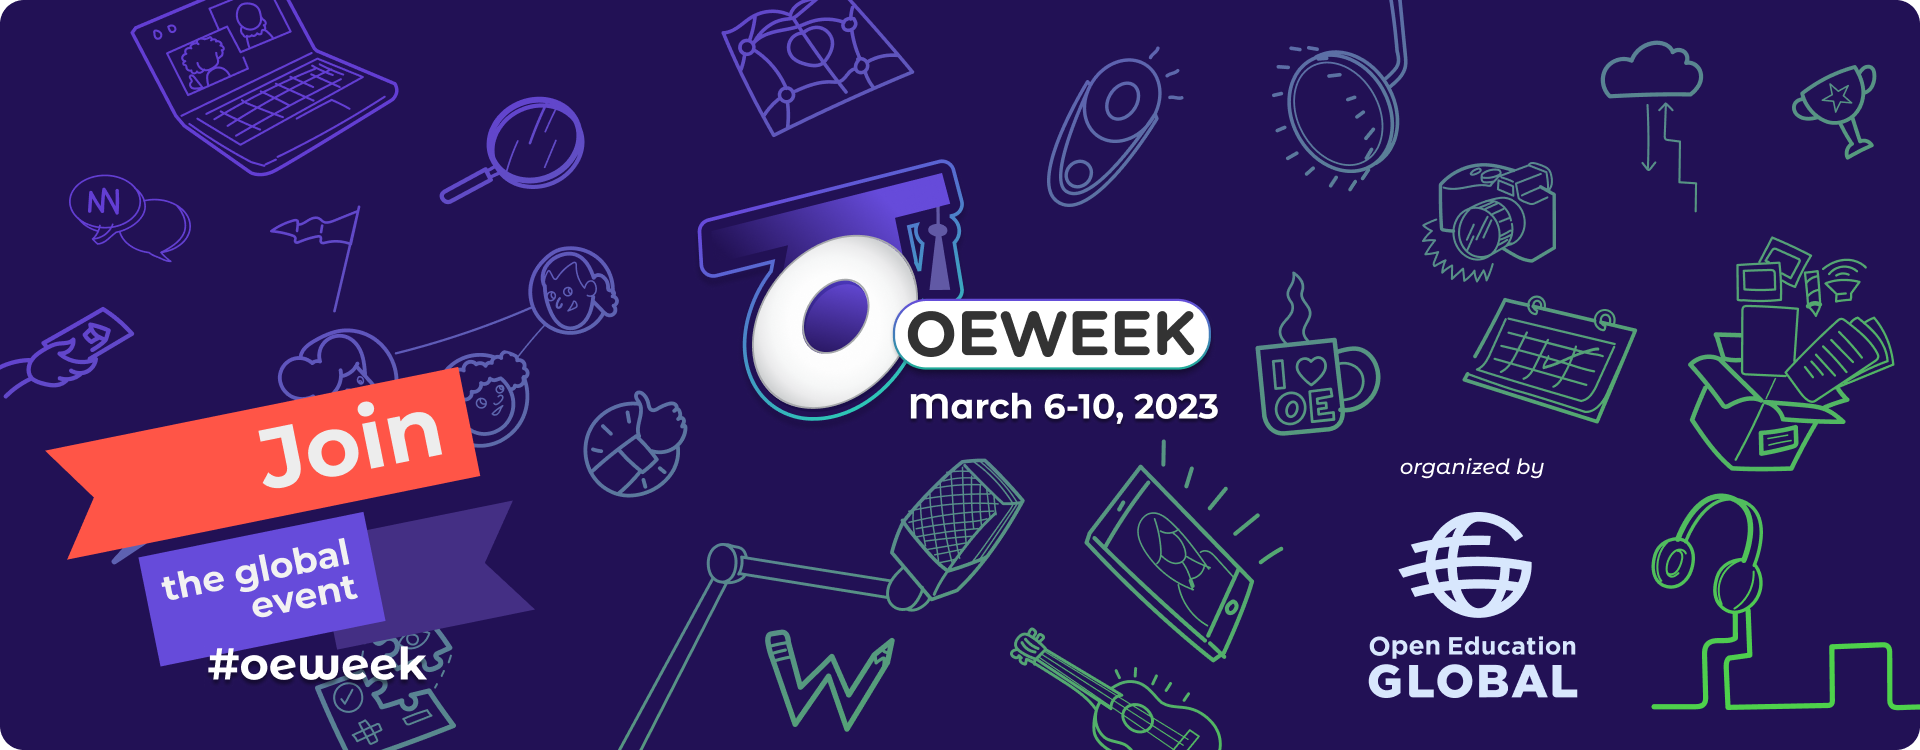 OE Week March 6-10, 2023